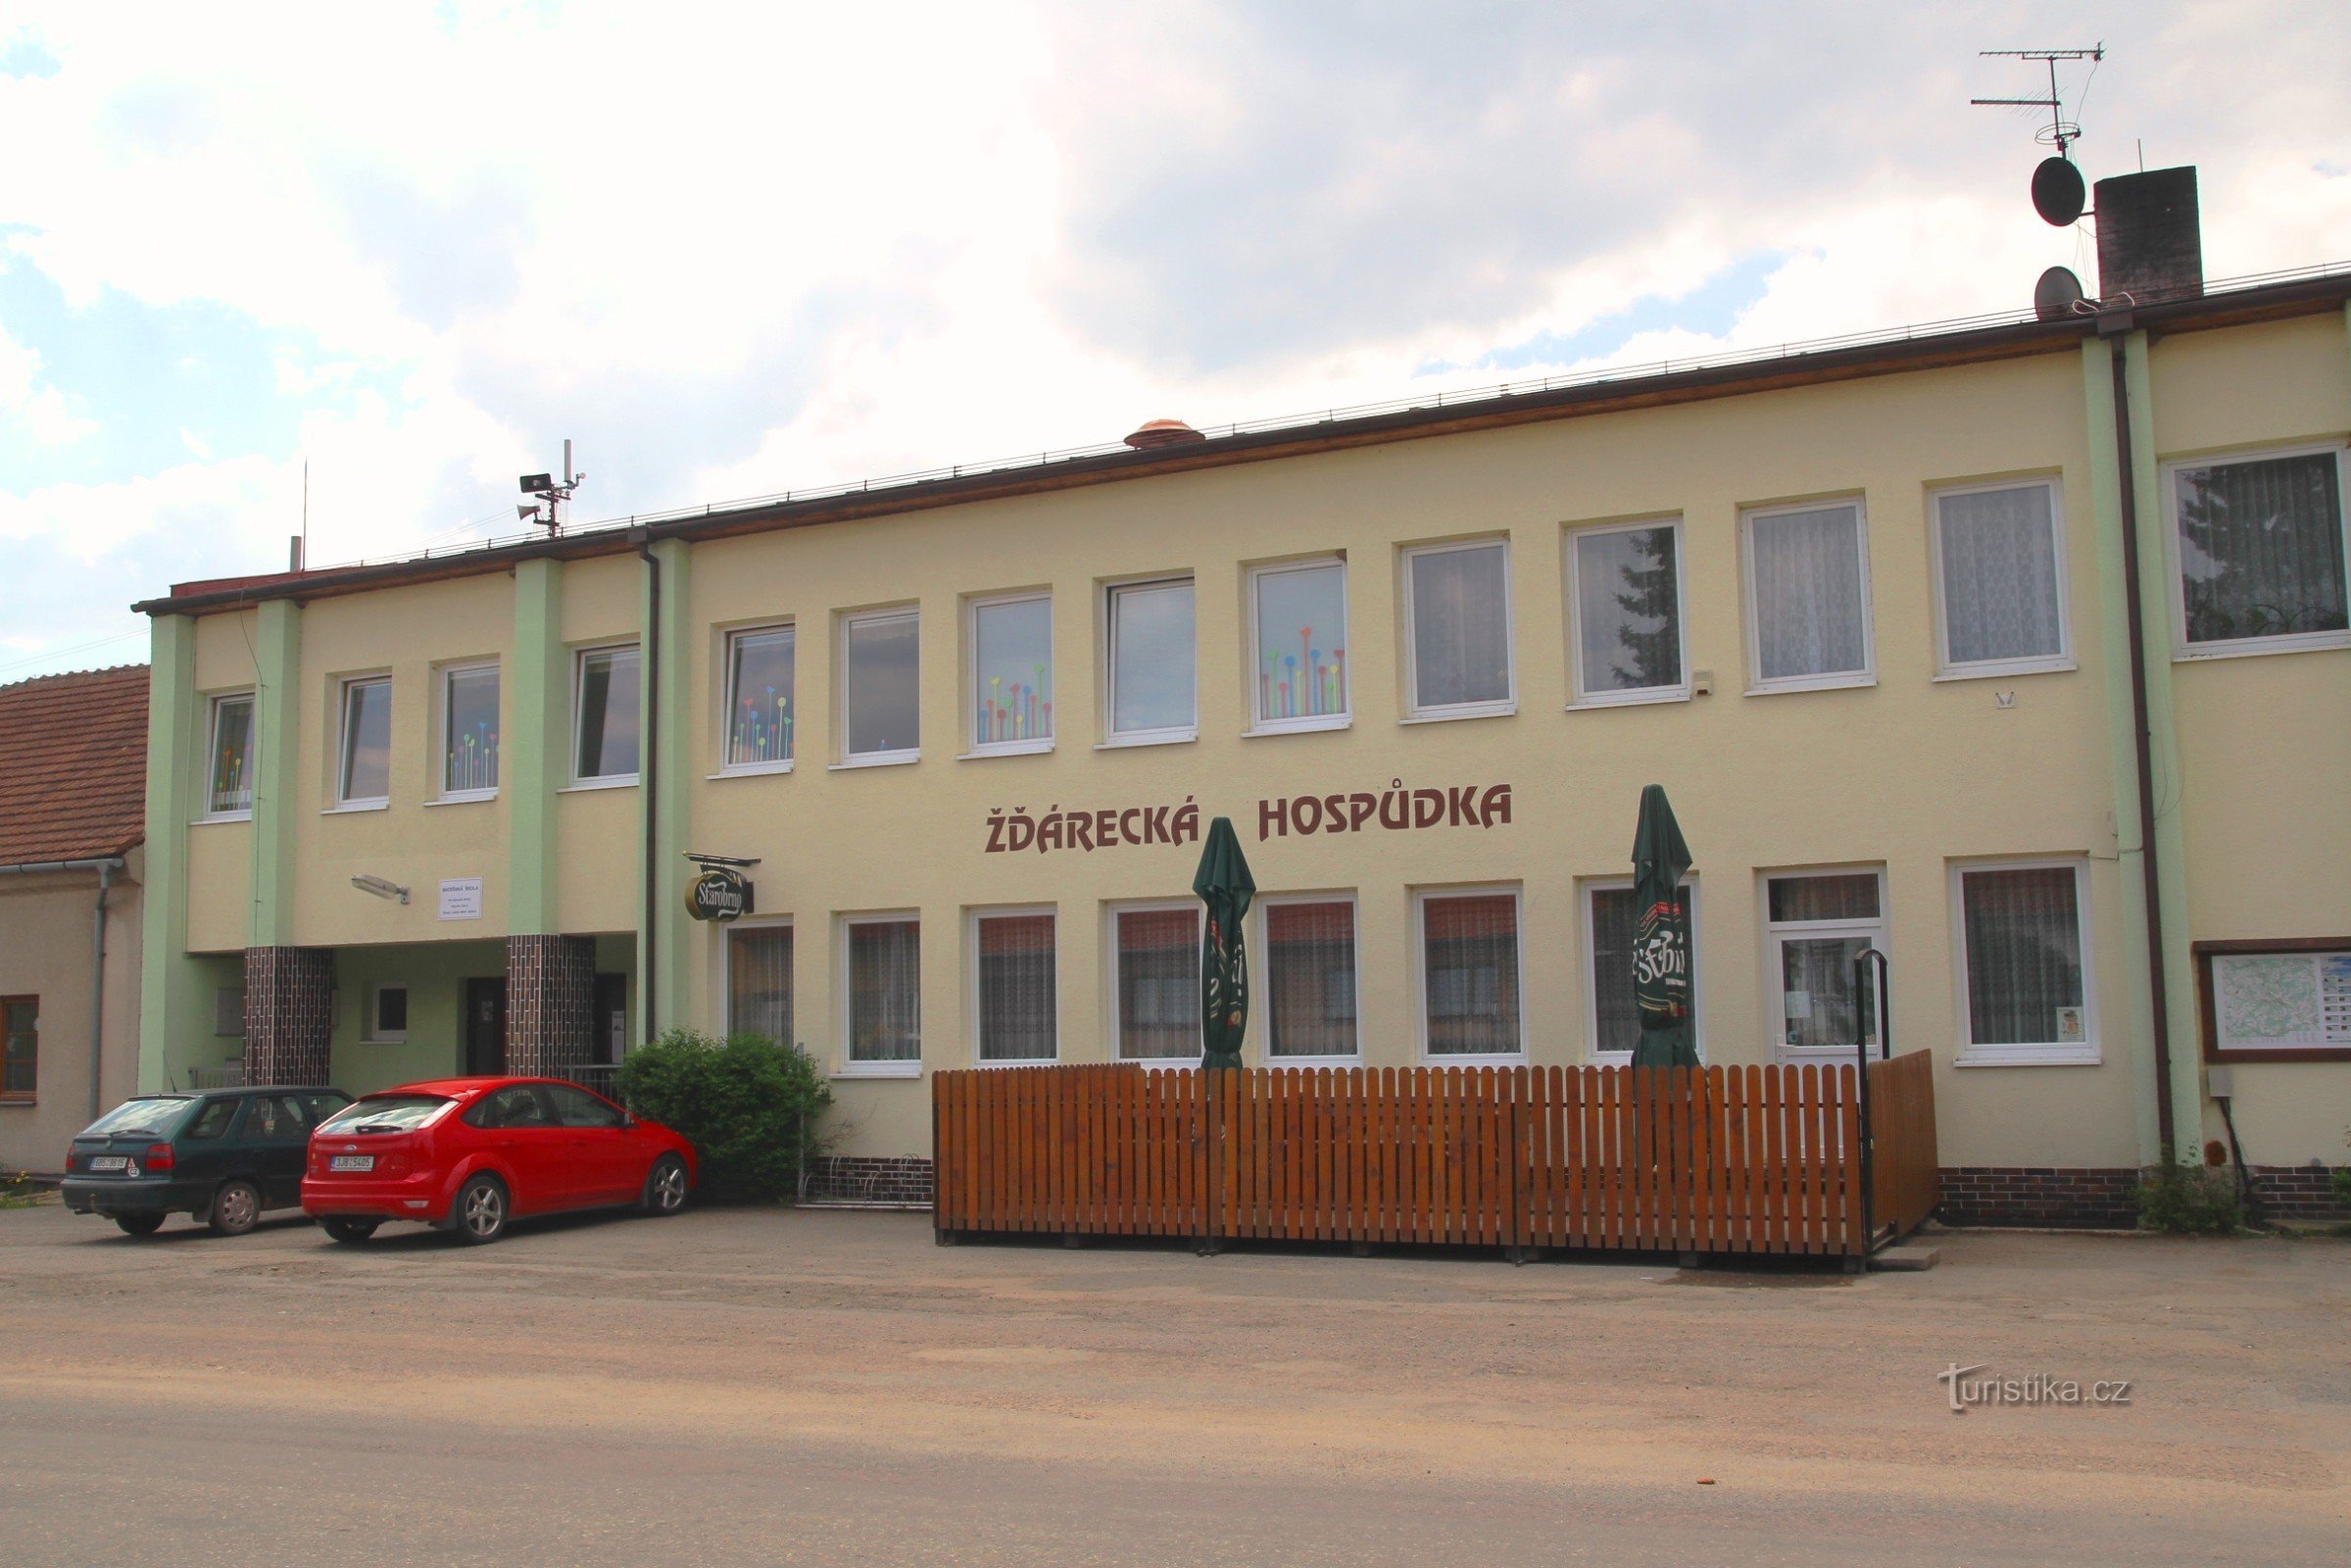 Pivnica Žďárecká nalazi se u blizini autobusnog stajališta